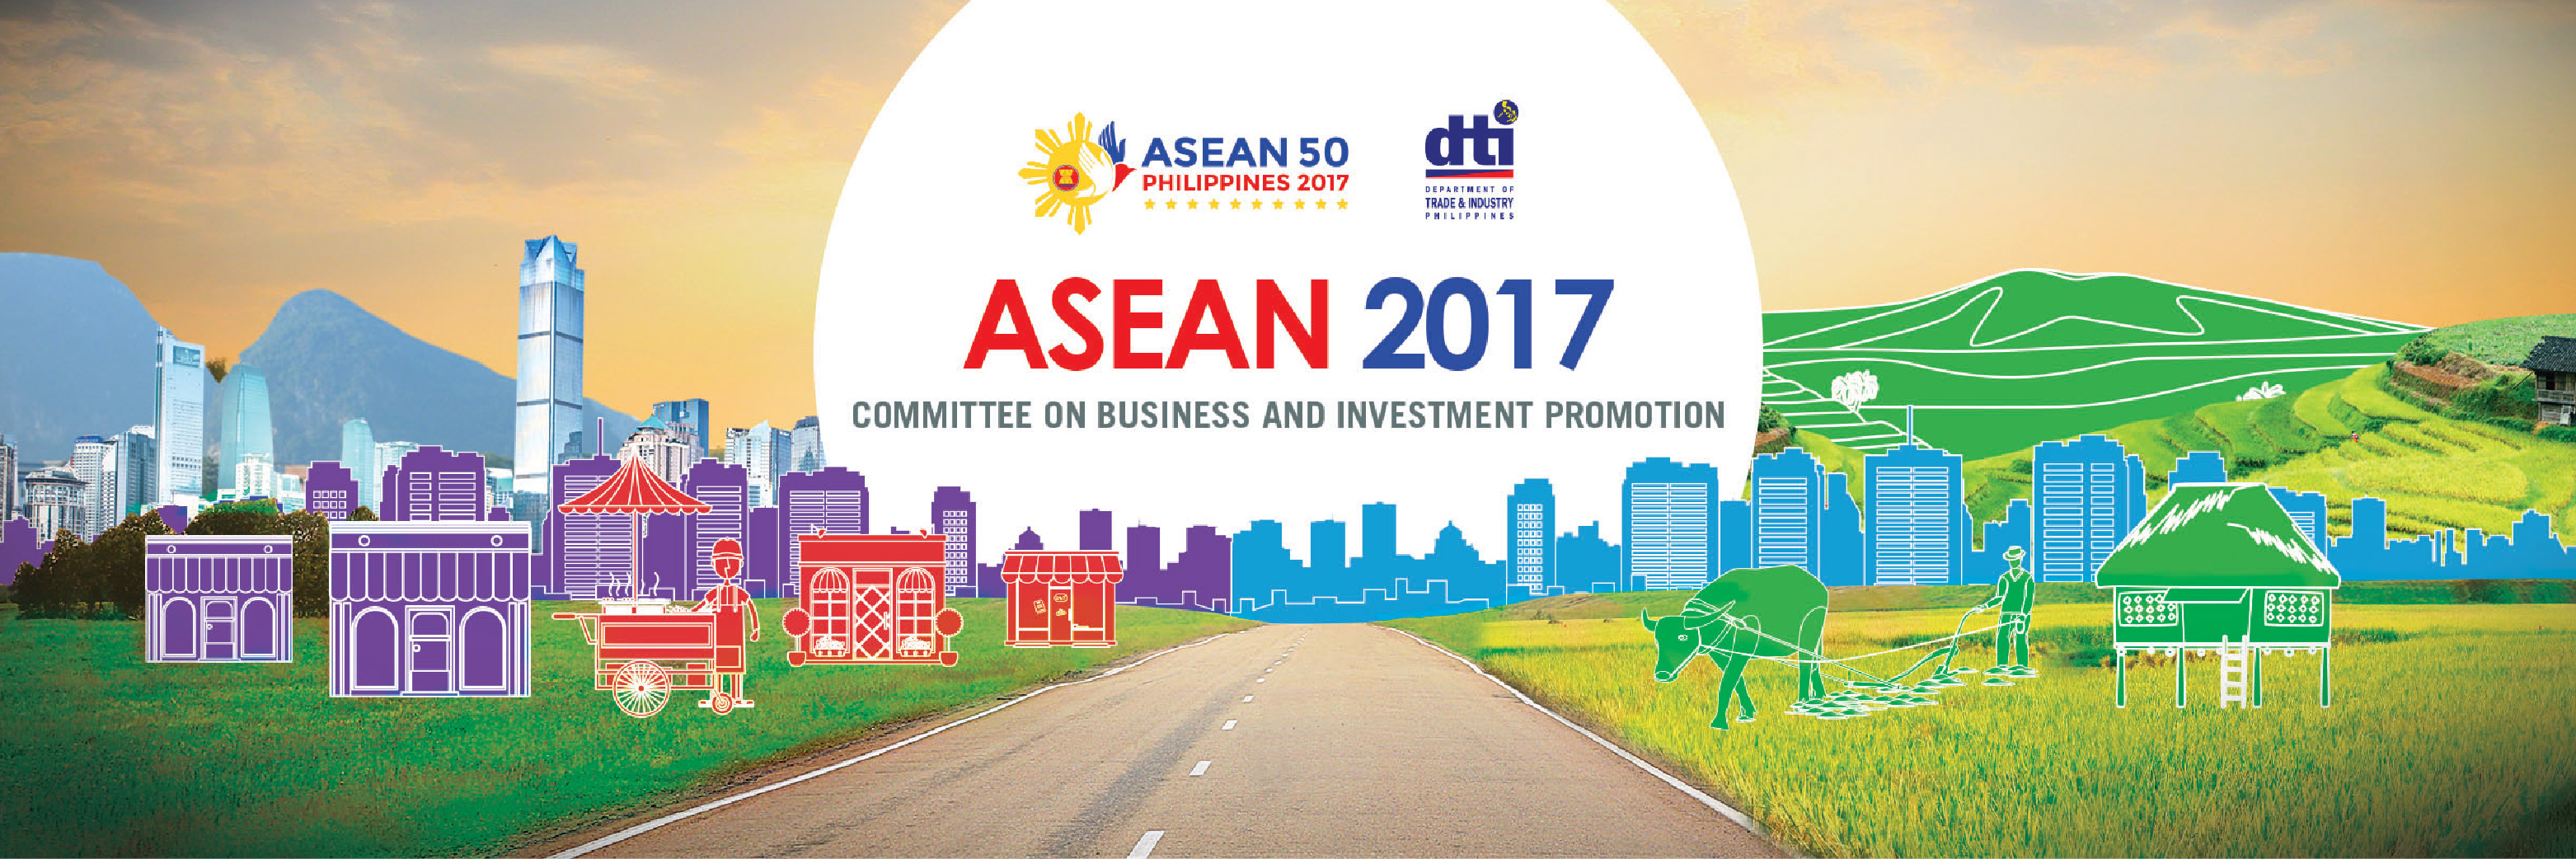 ASEAN 2017 banner